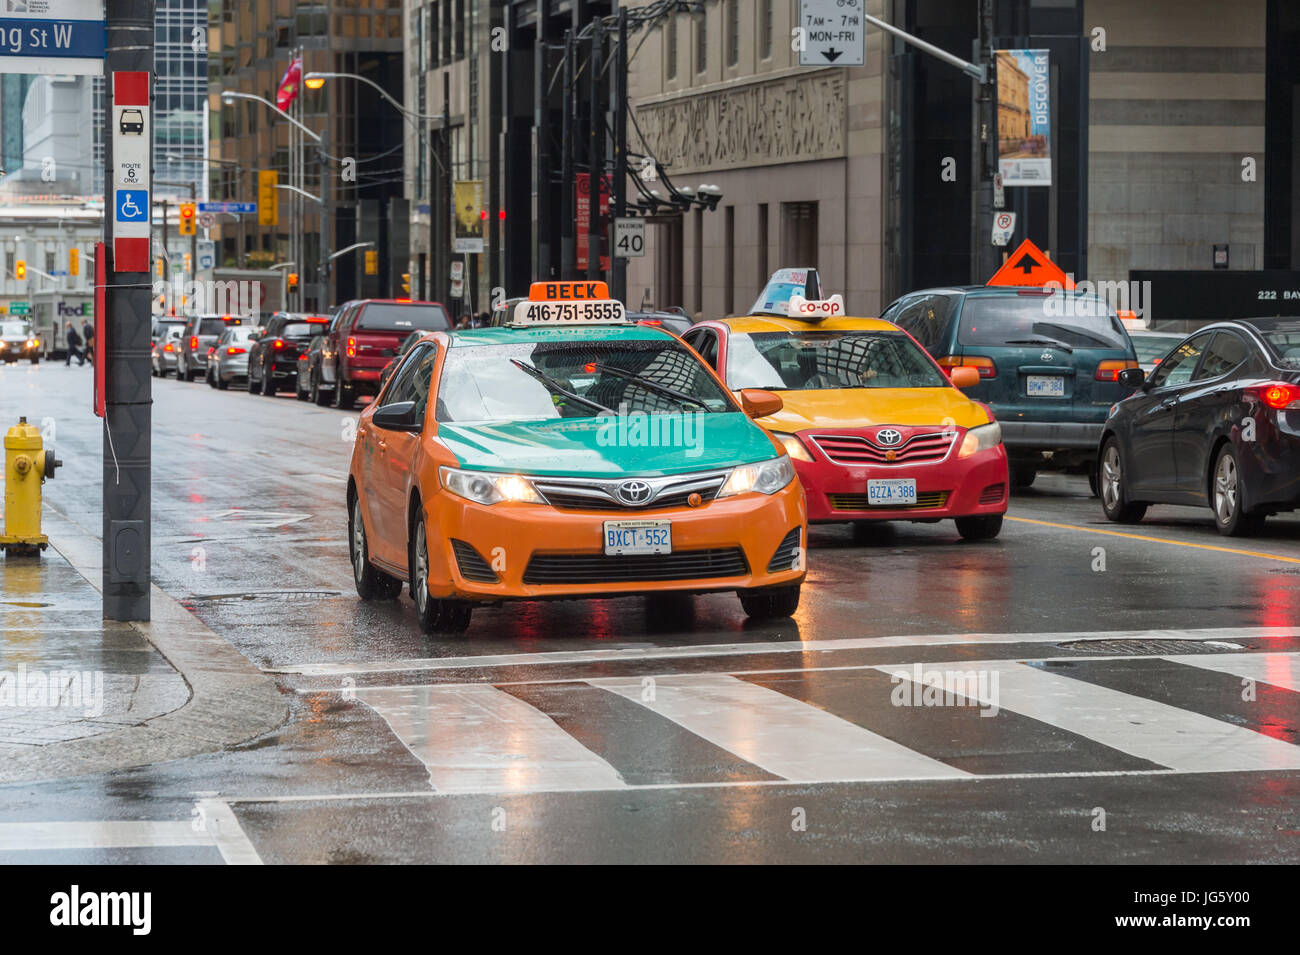 Toronto, Canada - 26 juin 2017 : 2 taxis dans le centre-ville de Toronto un jour de pluie Banque D'Images